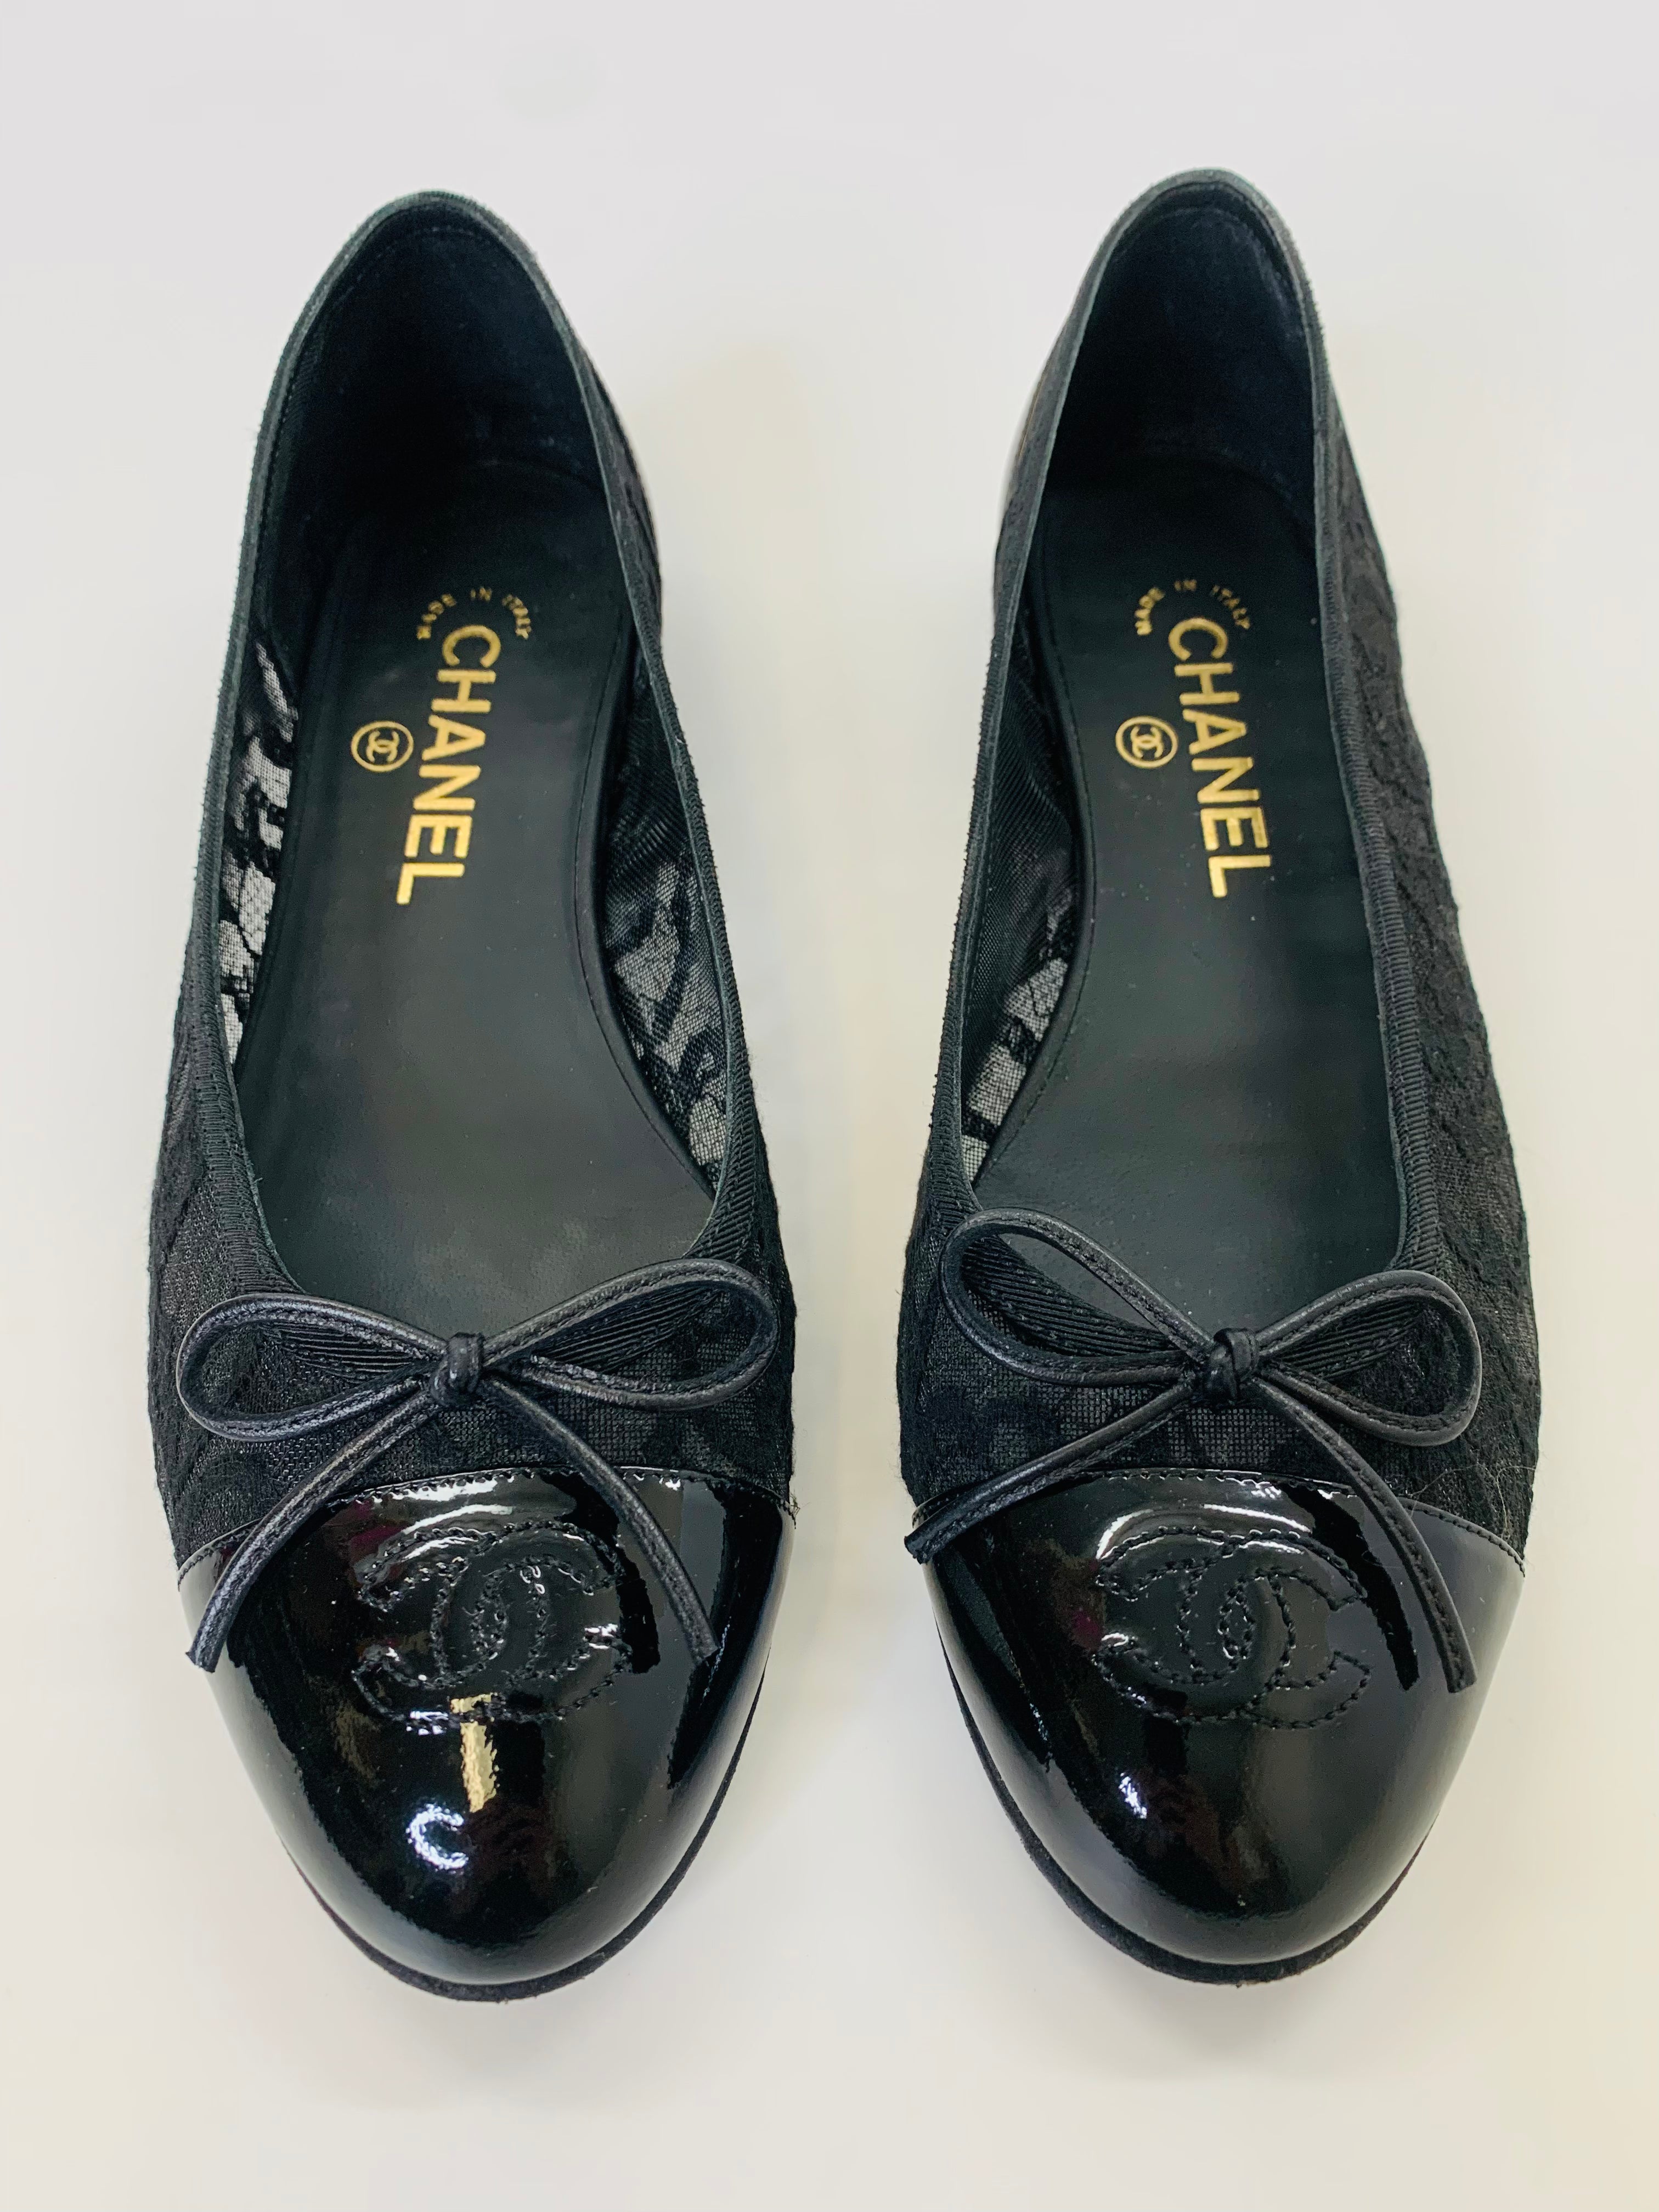 Chanel ballet shoes - Gem